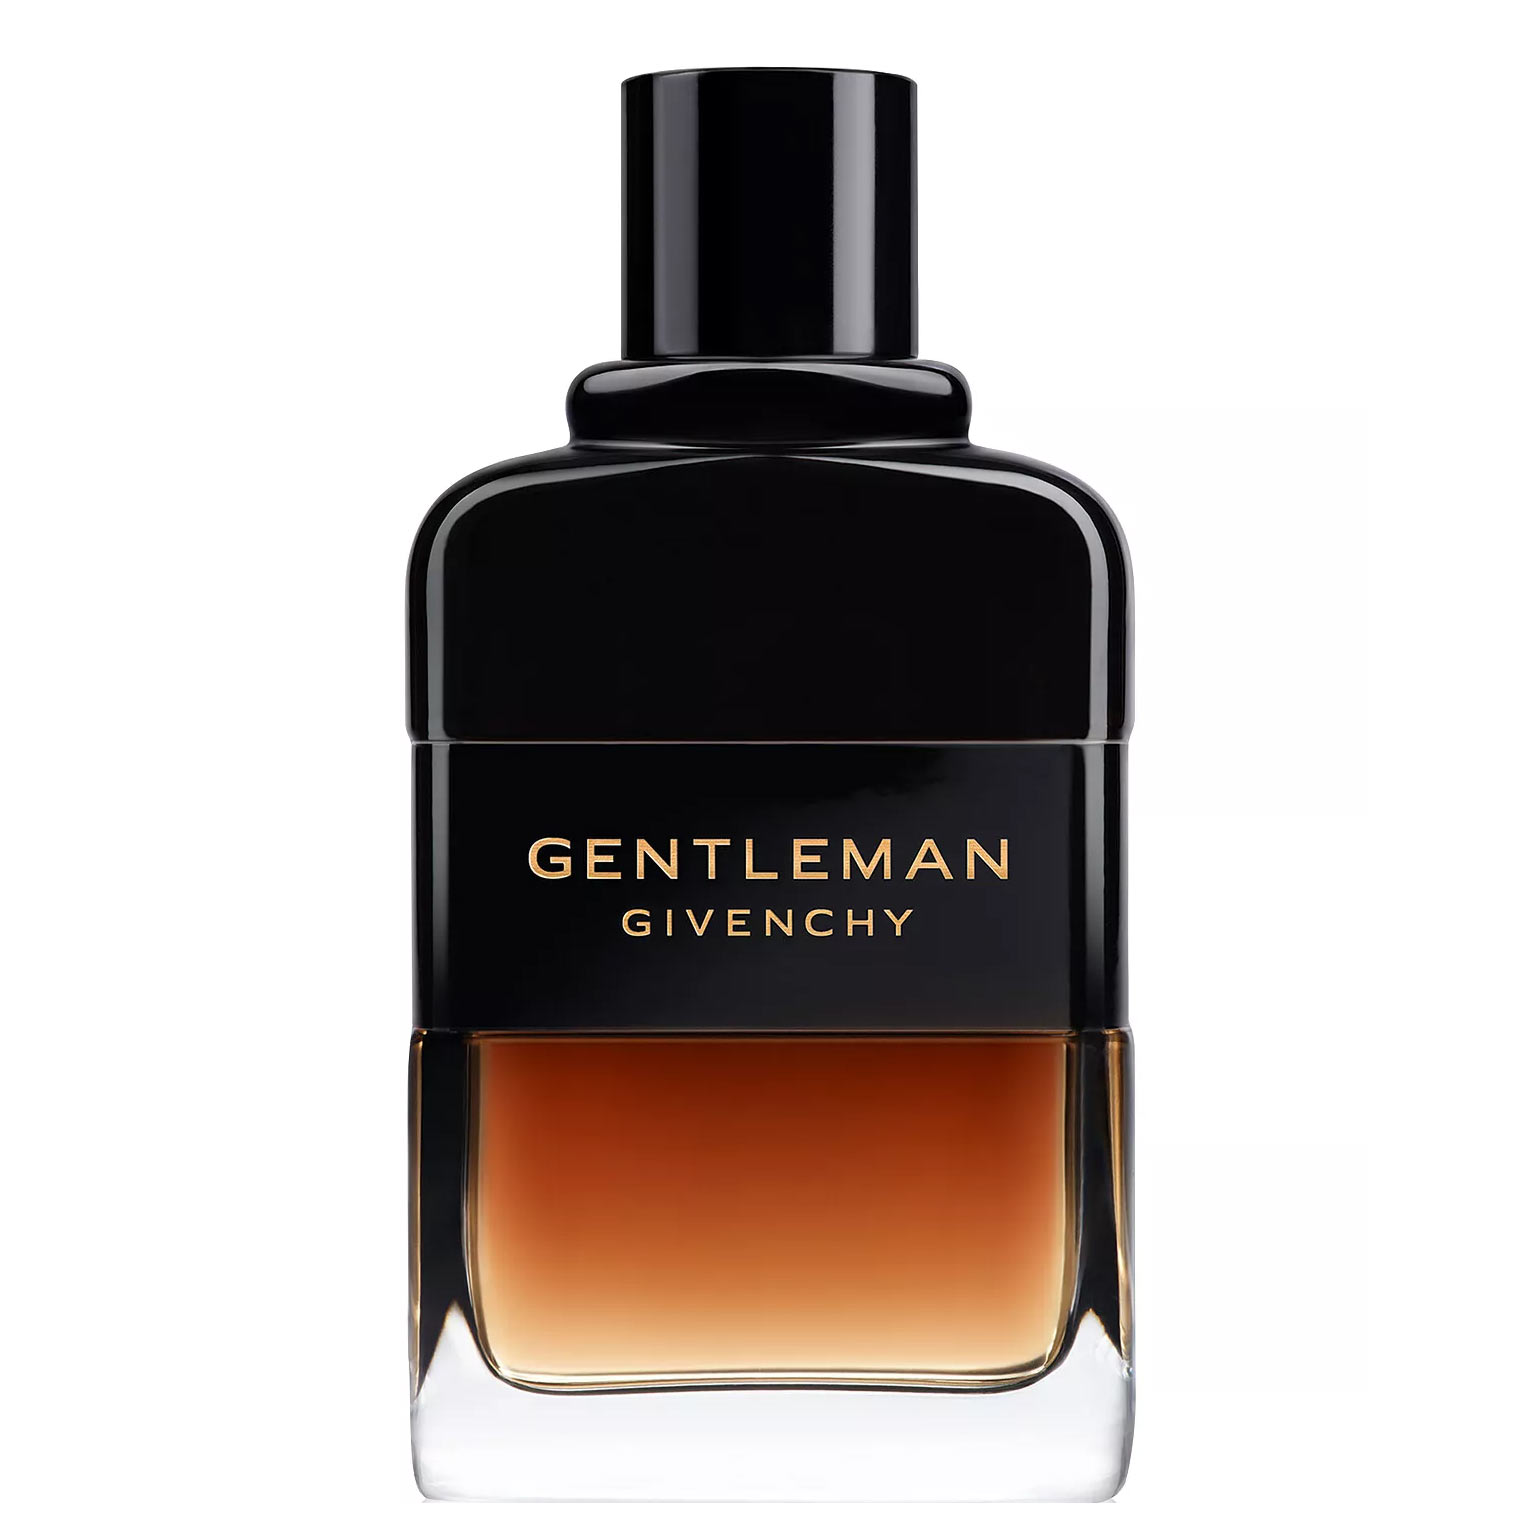 Gentleman Reserve Privee Eau de Parfum Givenchy Image